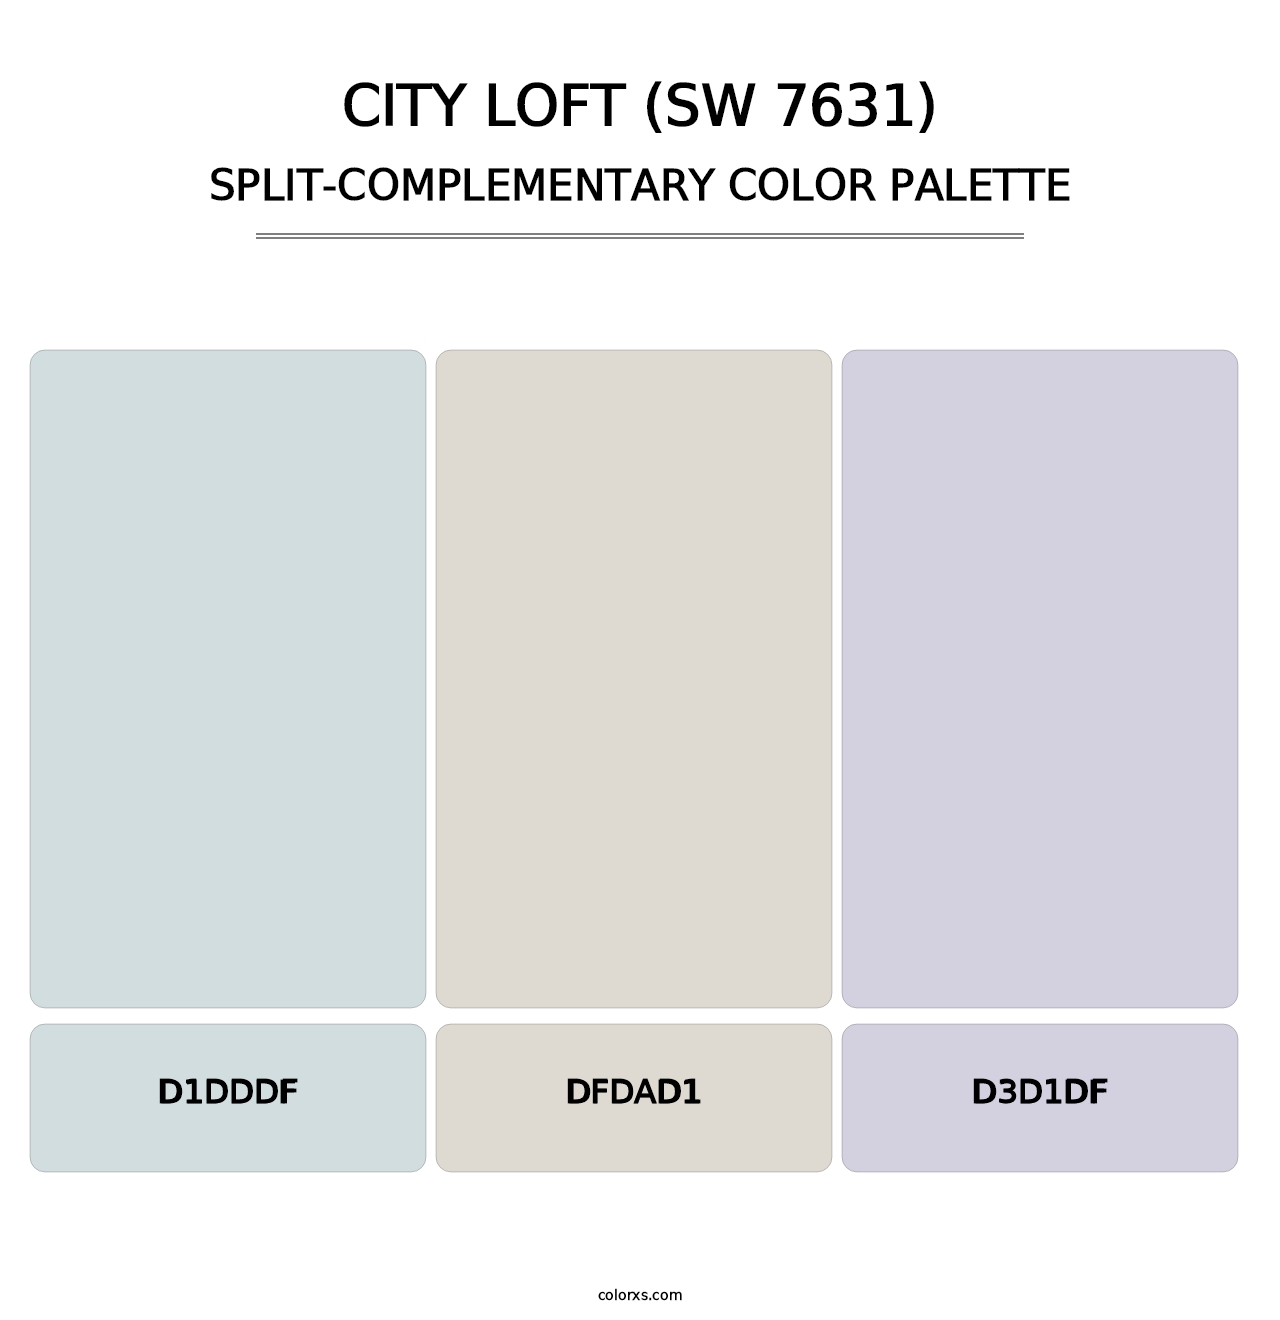 City Loft (SW 7631) - Split-Complementary Color Palette